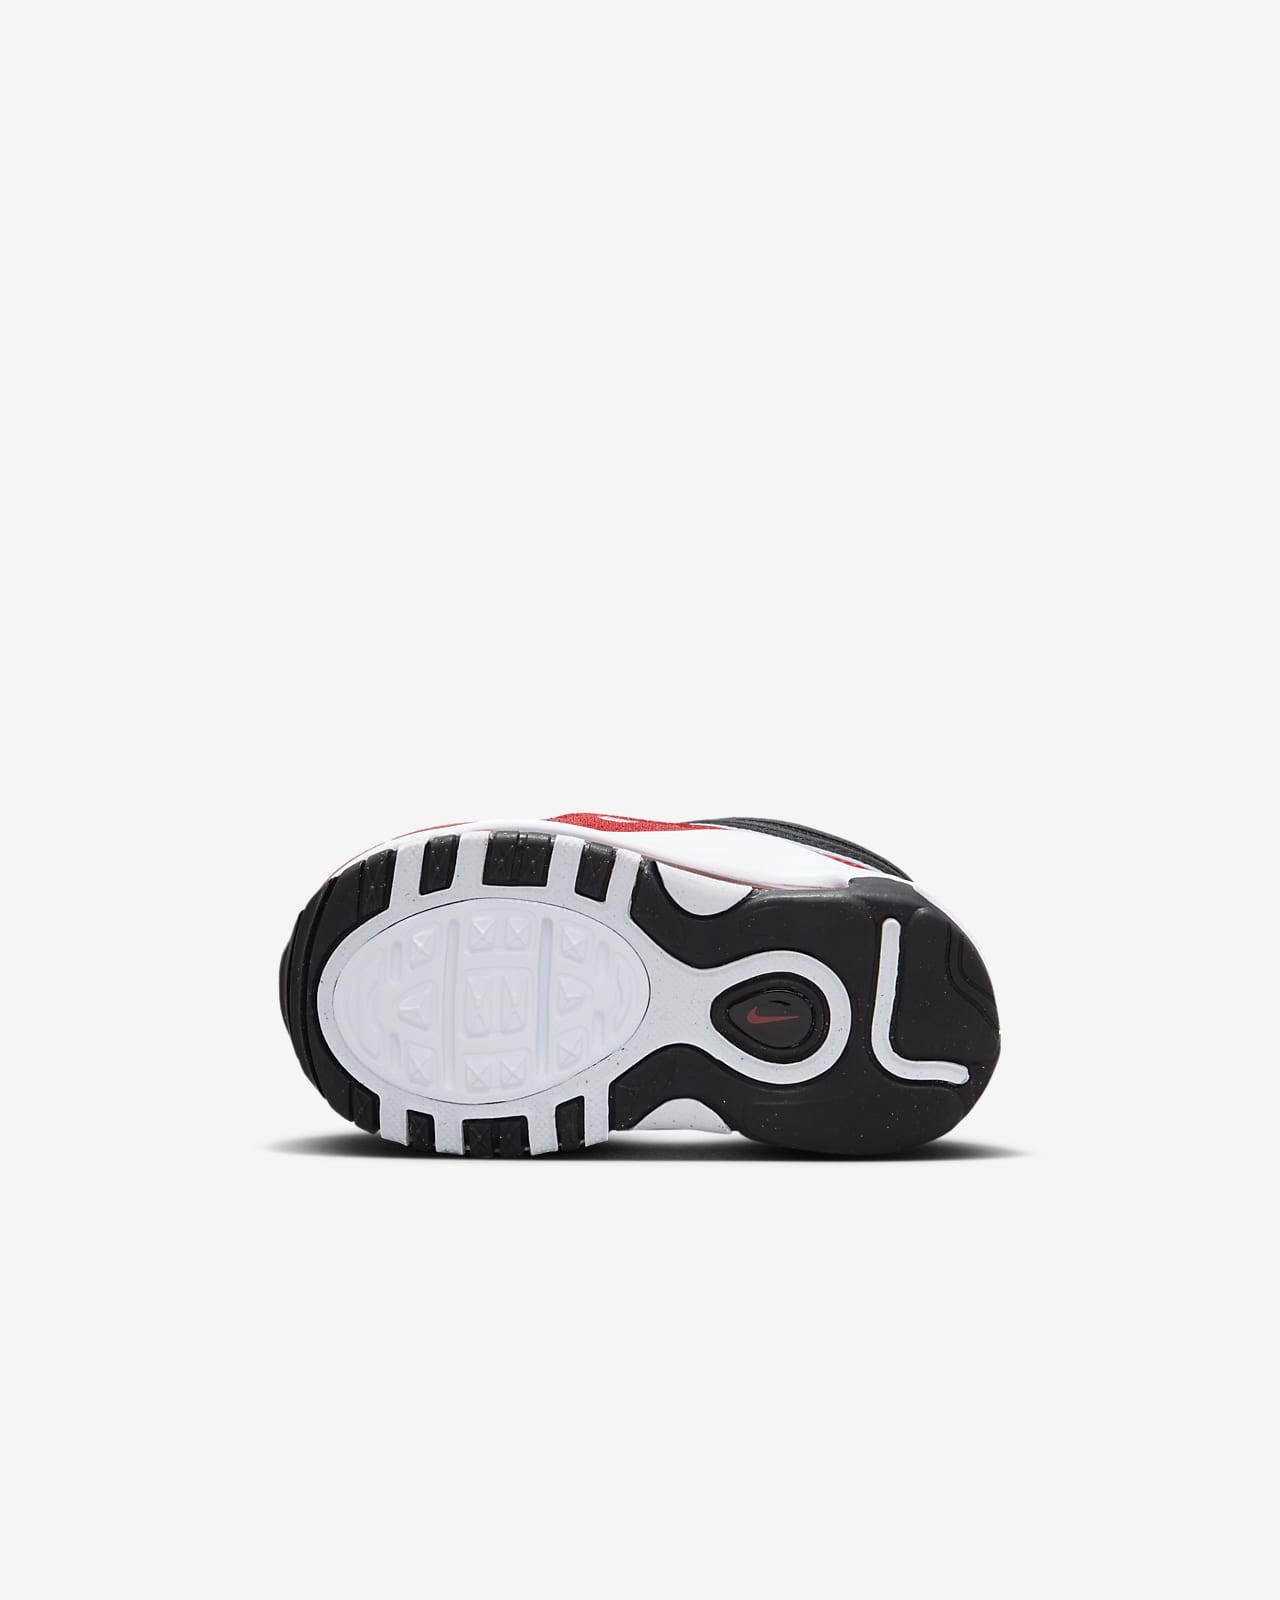 Chaussures Nike Air Max 97 pour Enfant - DN3275